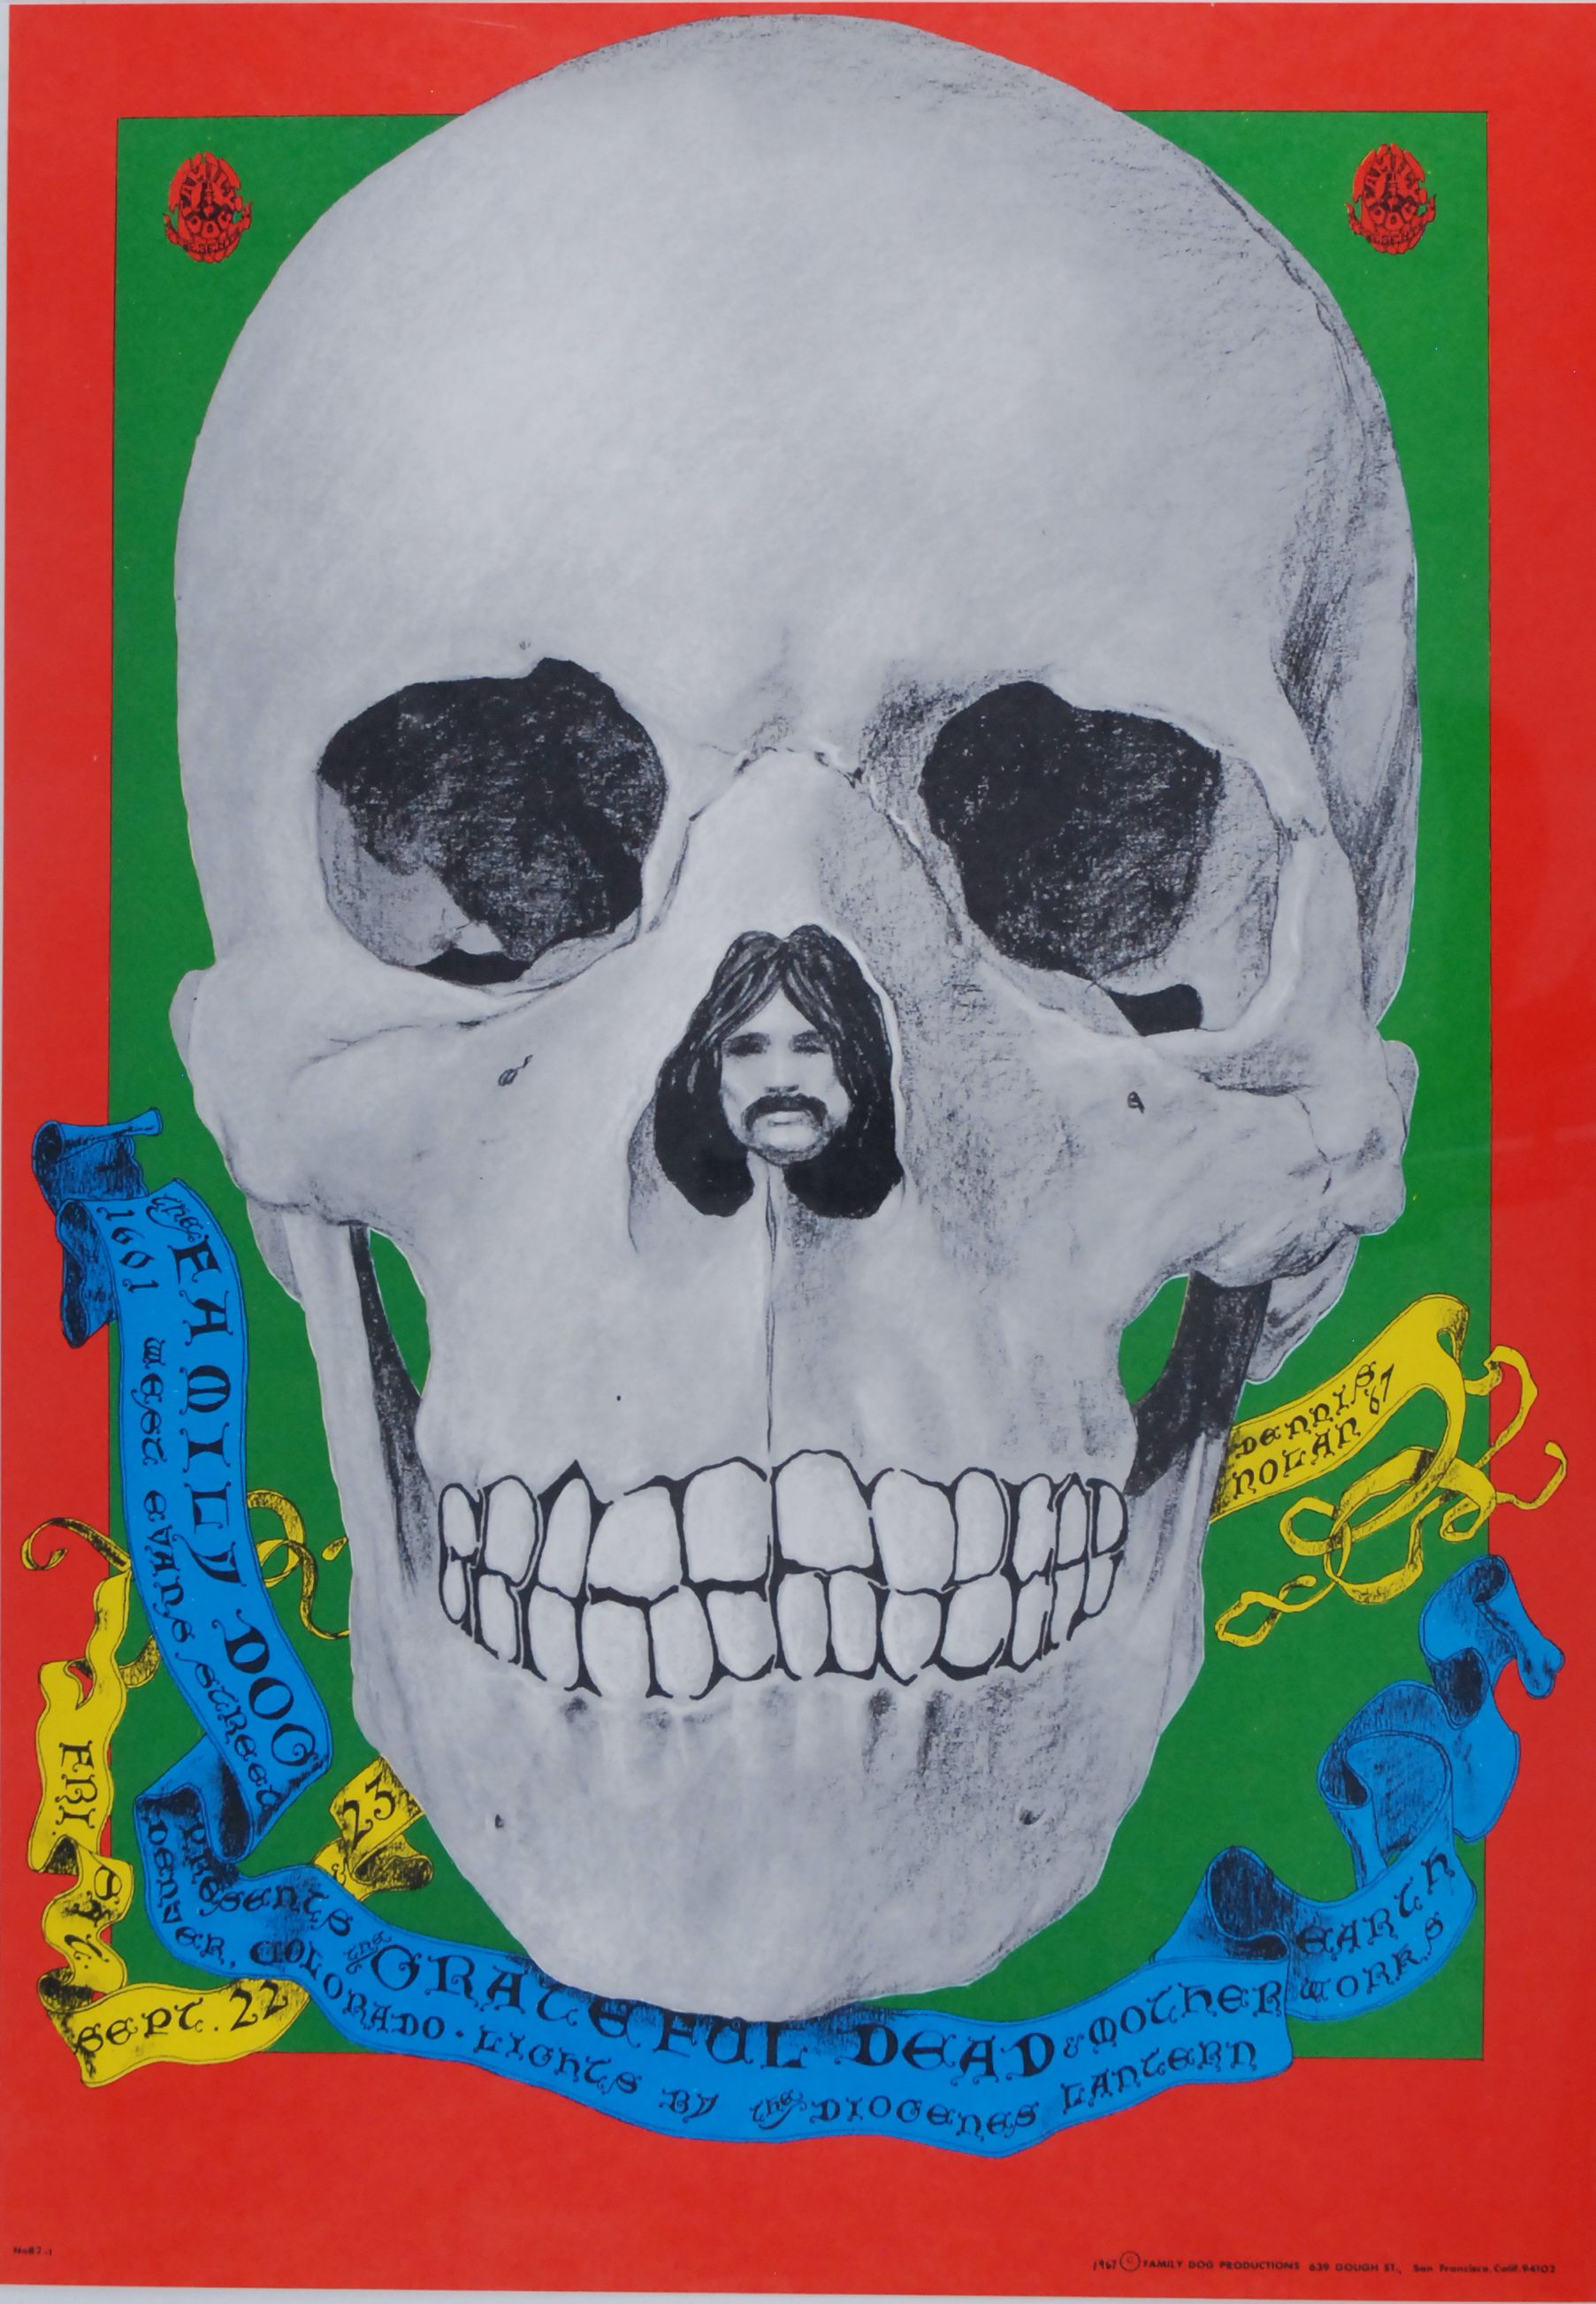 FD-82-OP-1 Concert Poster